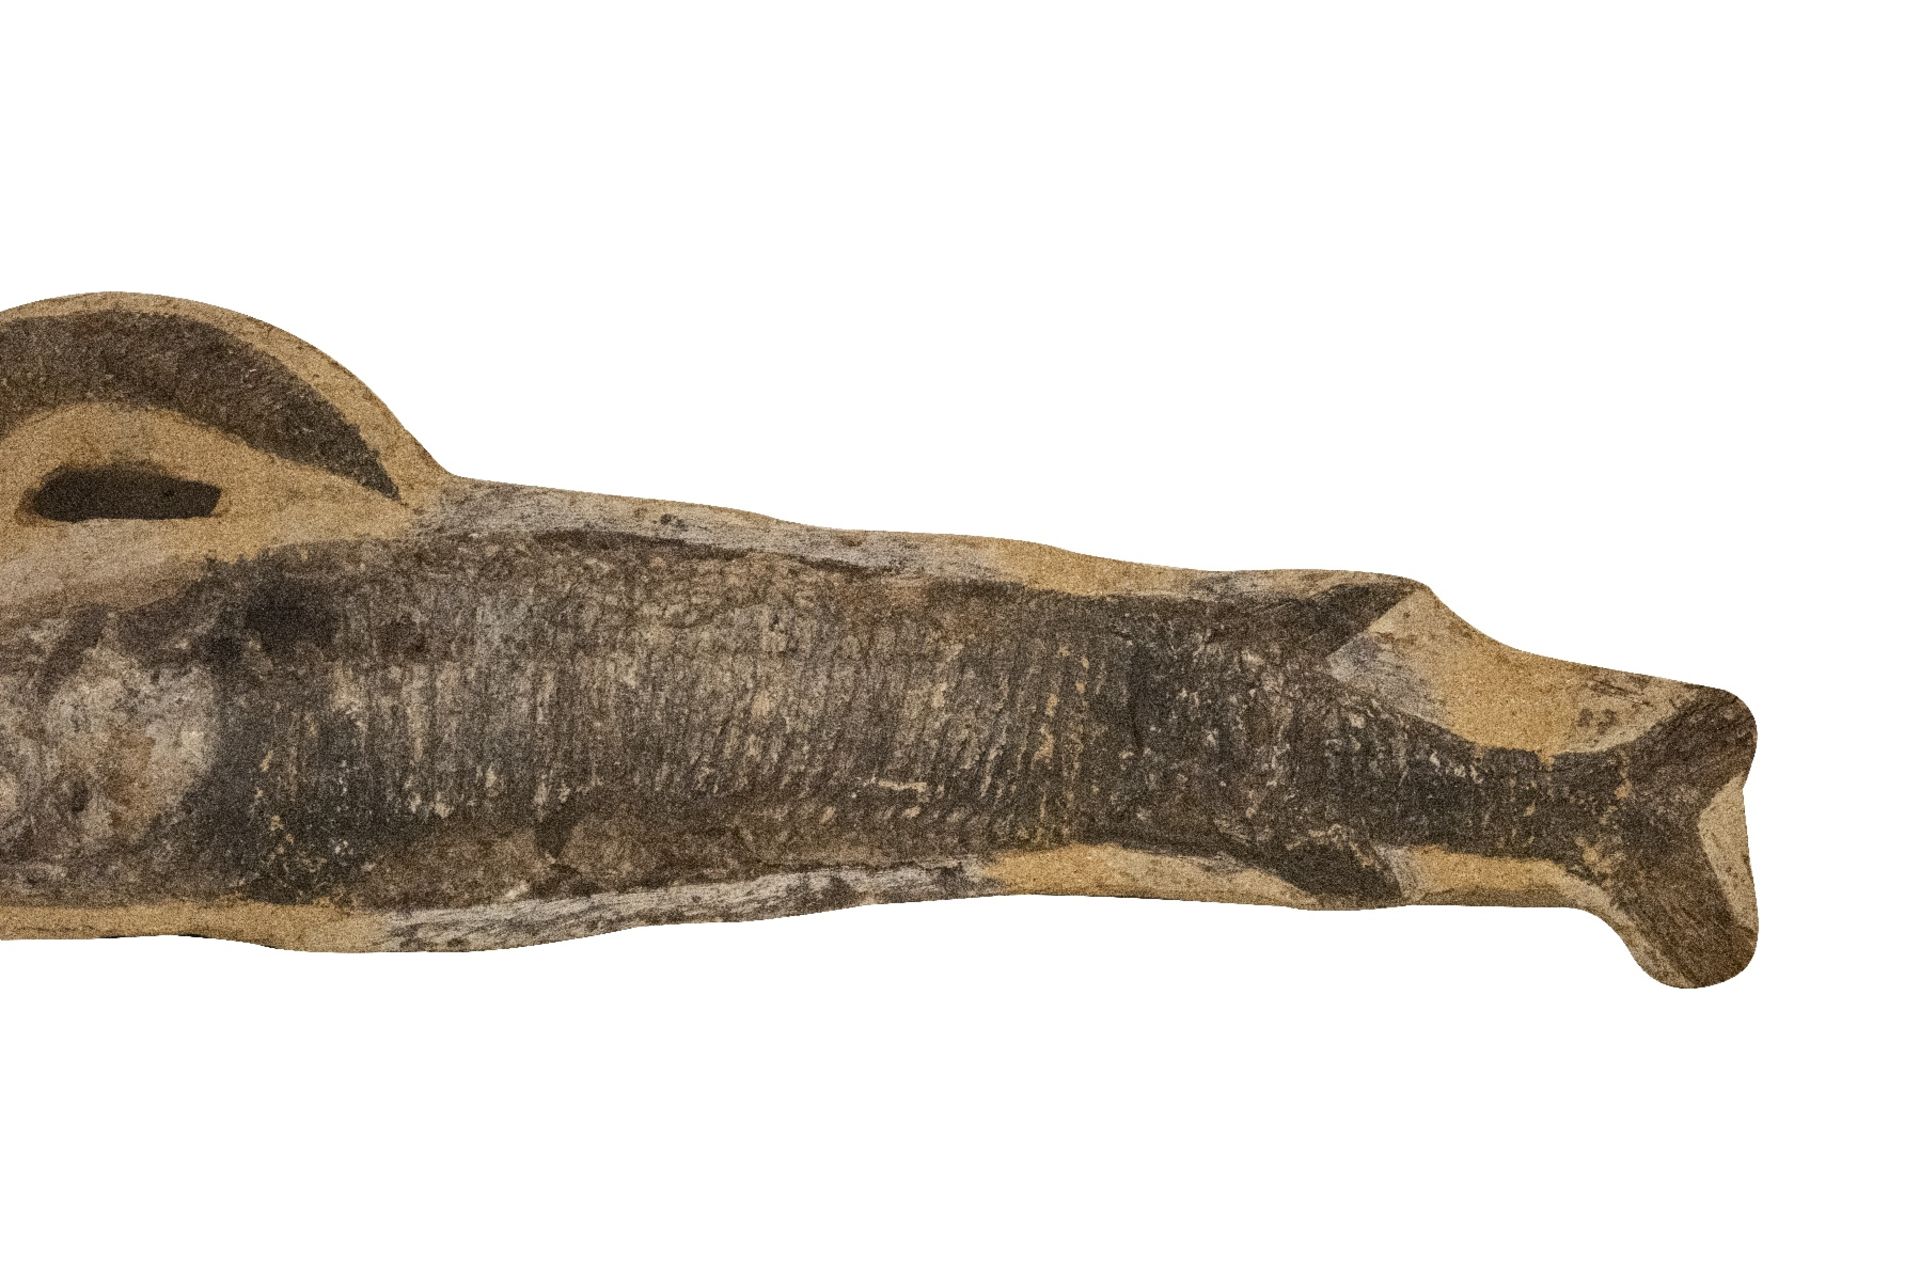 Versteinerter Fisch | Fossilized Fish - Image 2 of 5